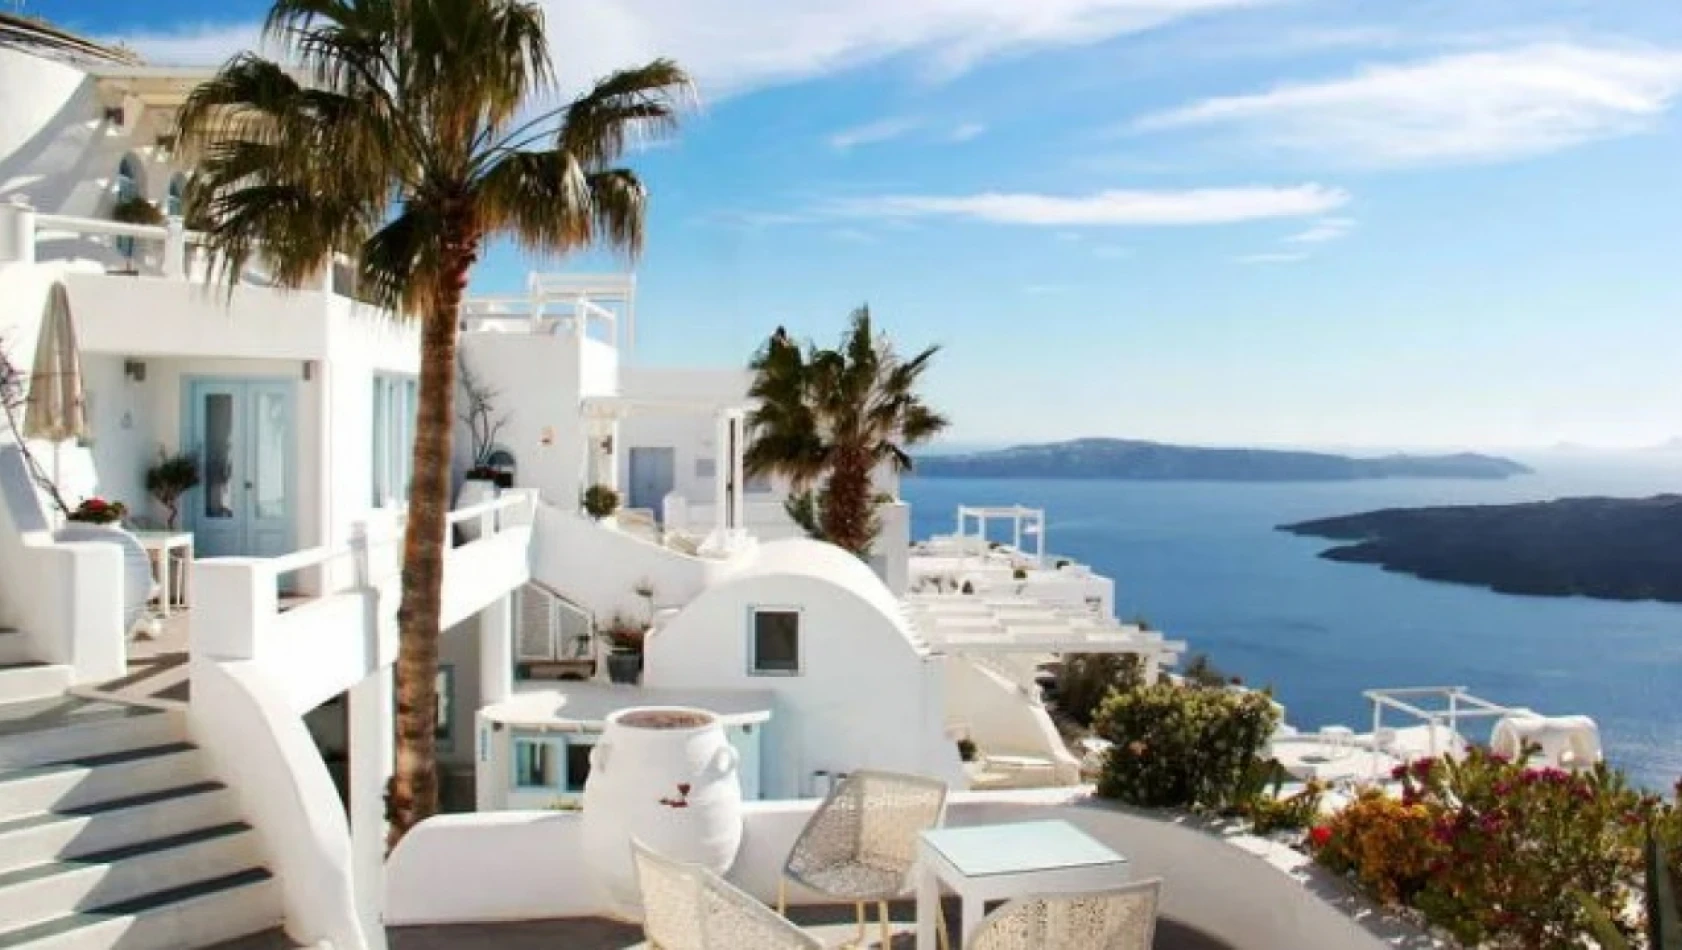 Yunan adalarına çok kolay gidebilirsiniz!